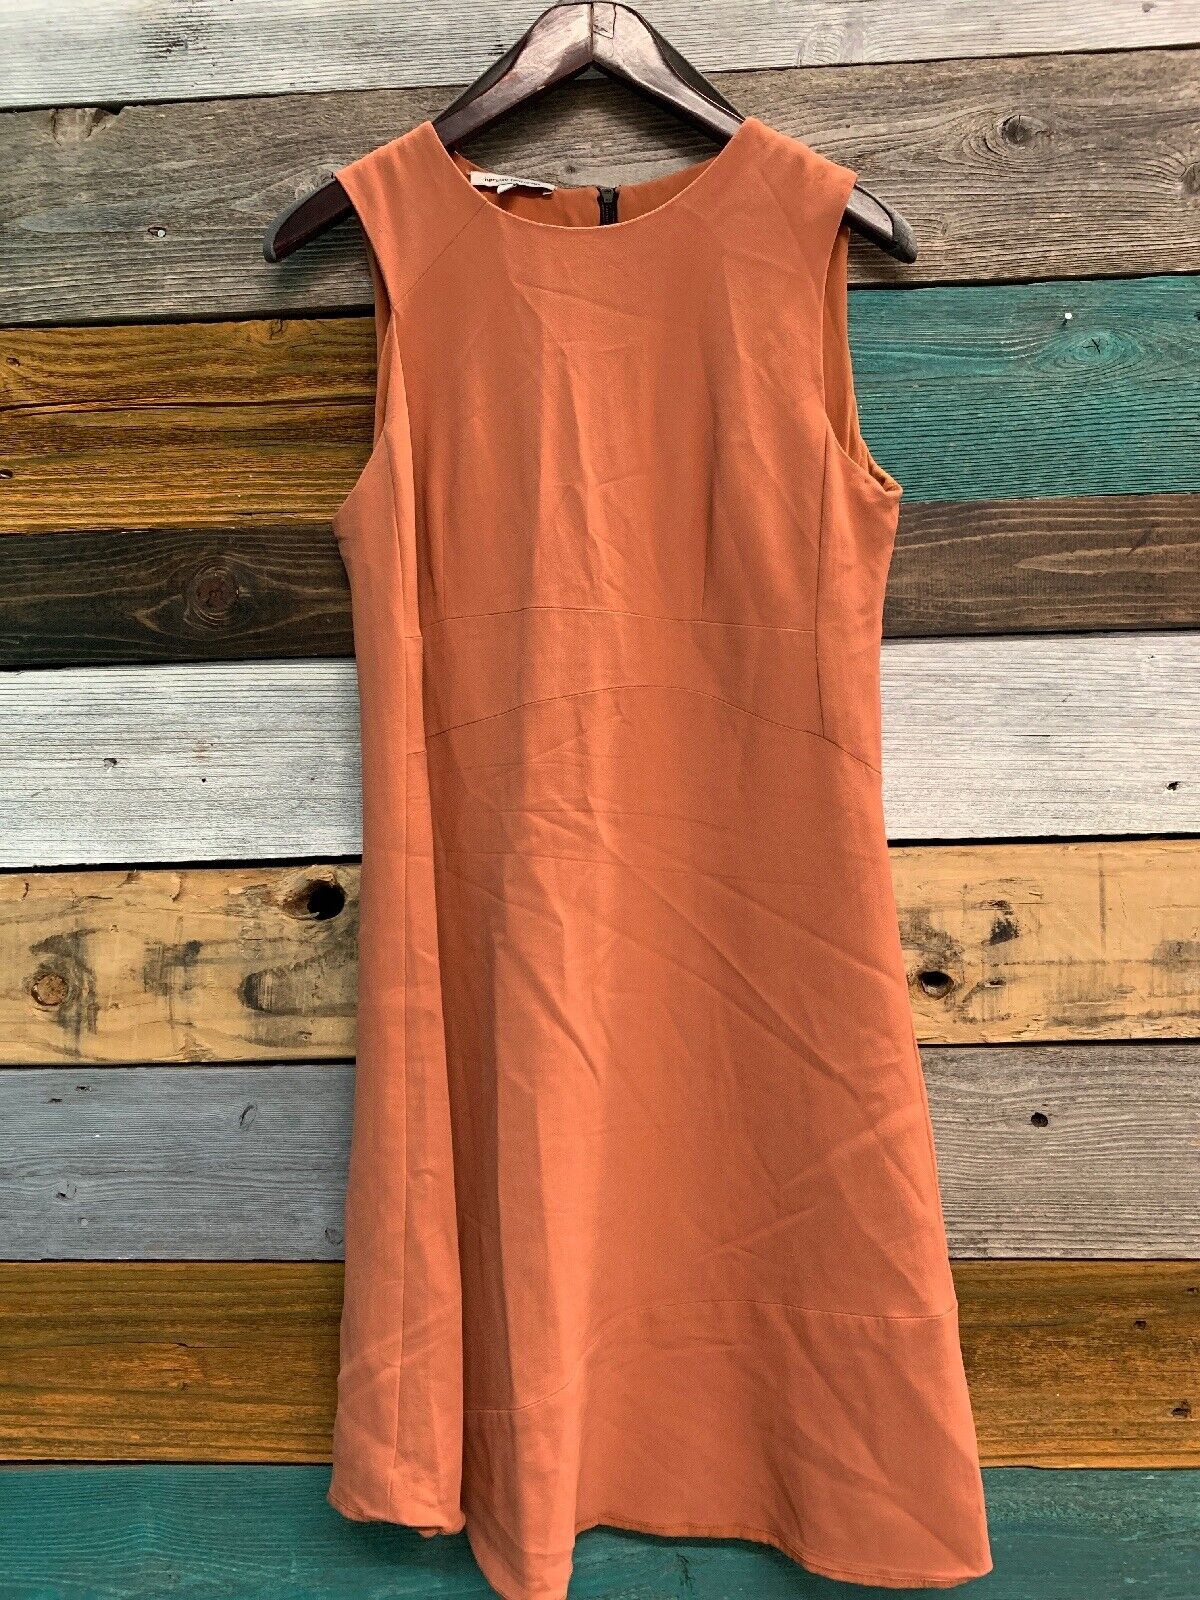 Narciso Rodriguez Peachy Orange Sleeveless Dress Size 44